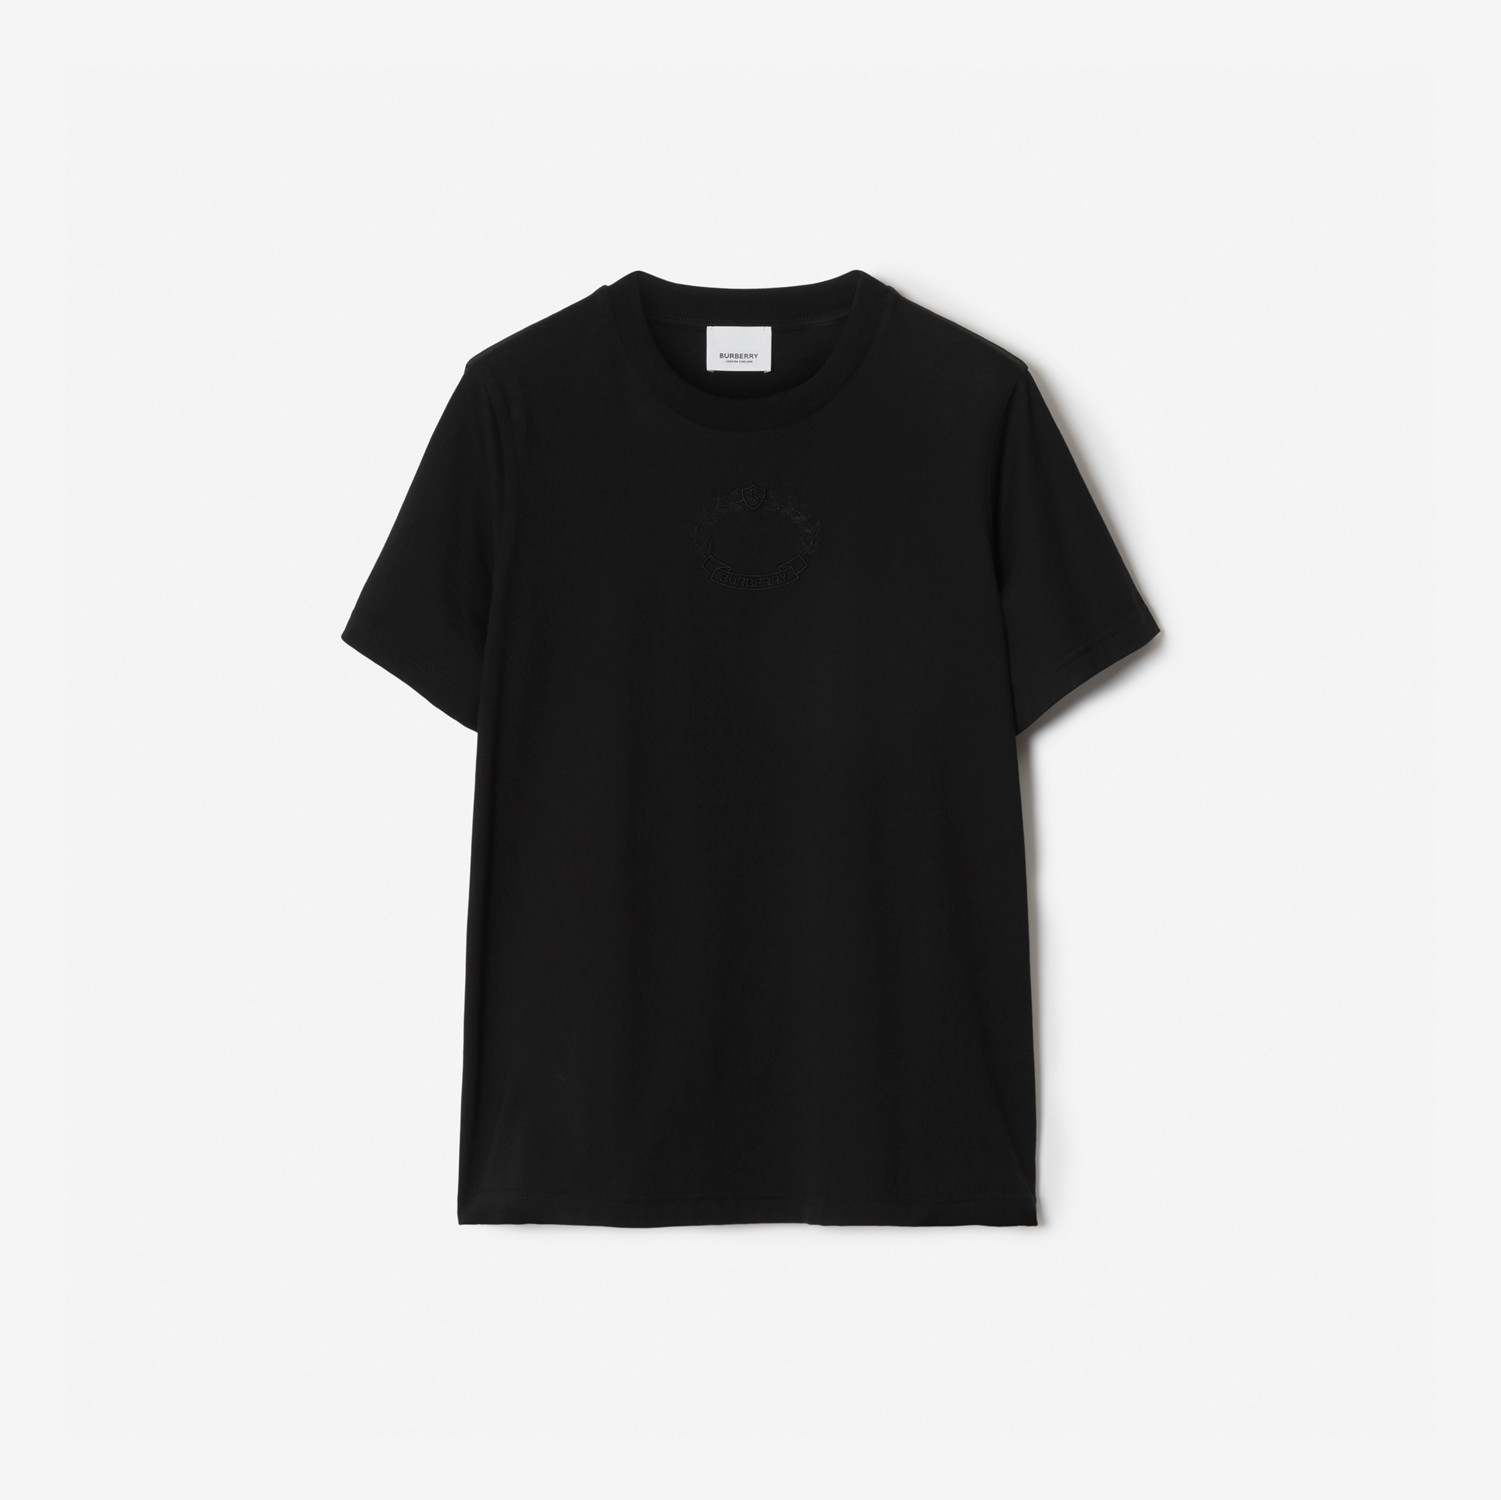 T-shirt in cotone con stemma con foglie di quercia ricamato (Nero) - Donna | Sito ufficiale Burberry®